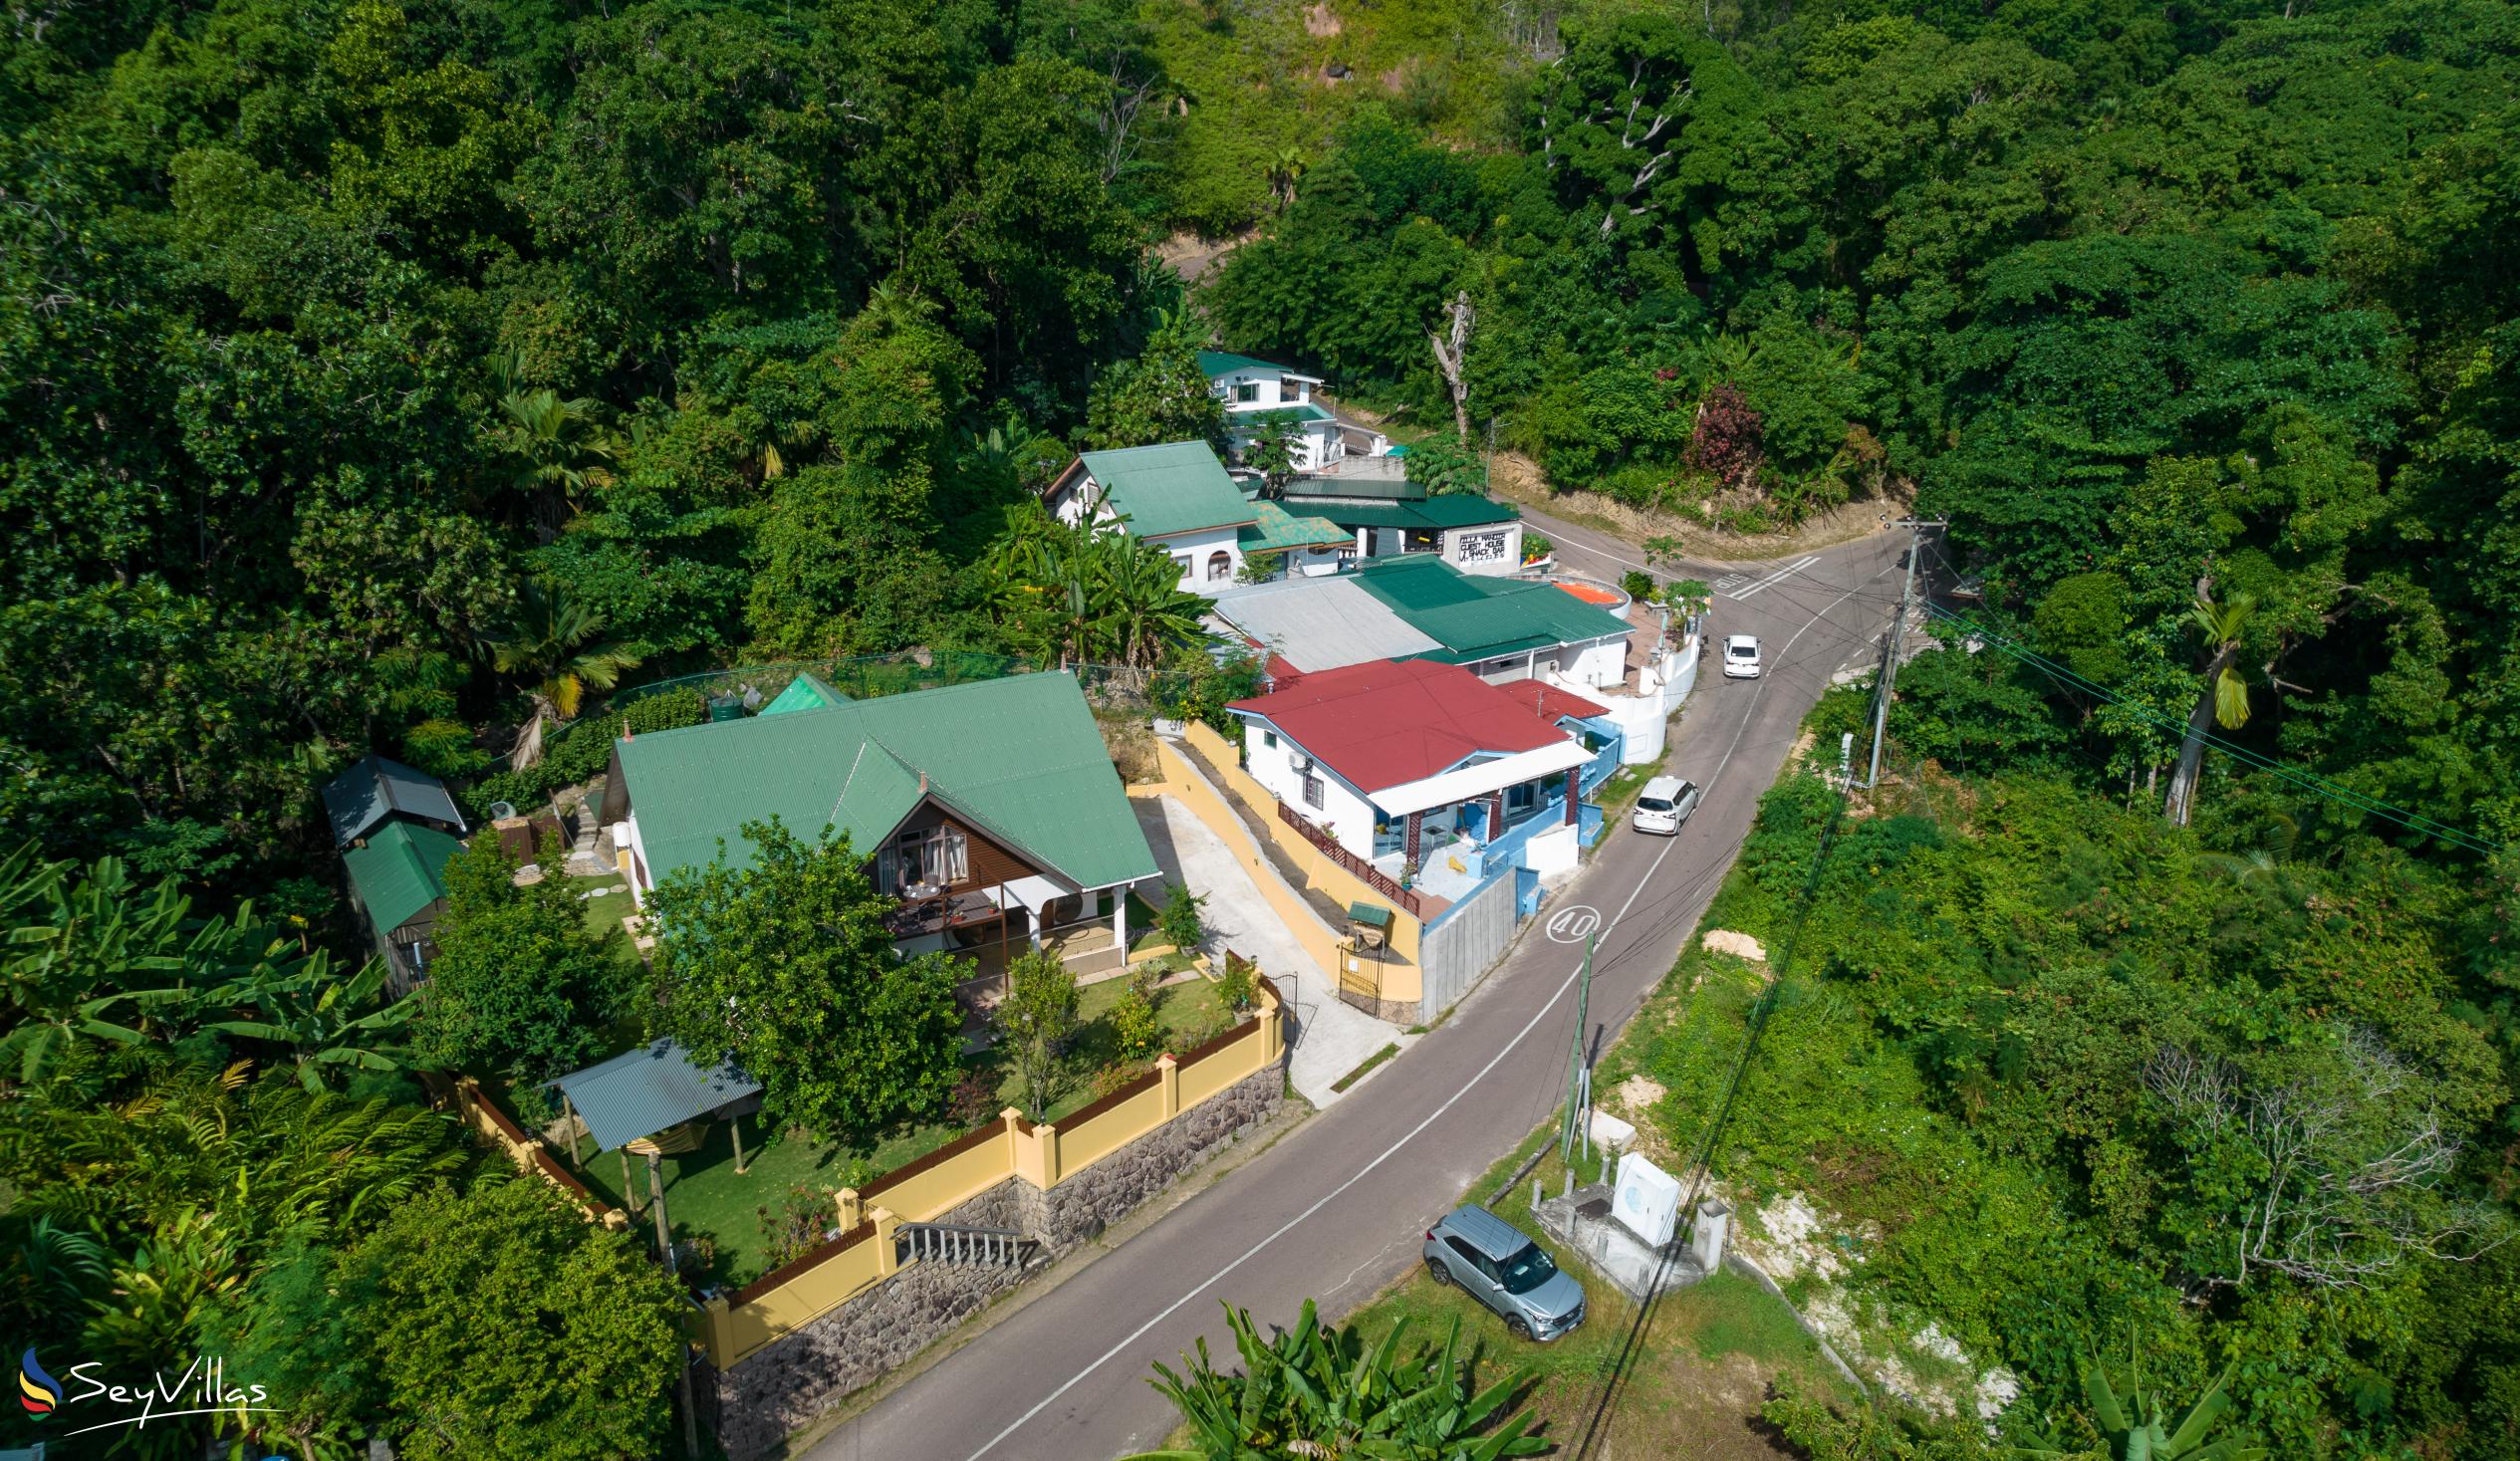 Foto 29: La Casa Grande - Aussenbereich - Praslin (Seychellen)